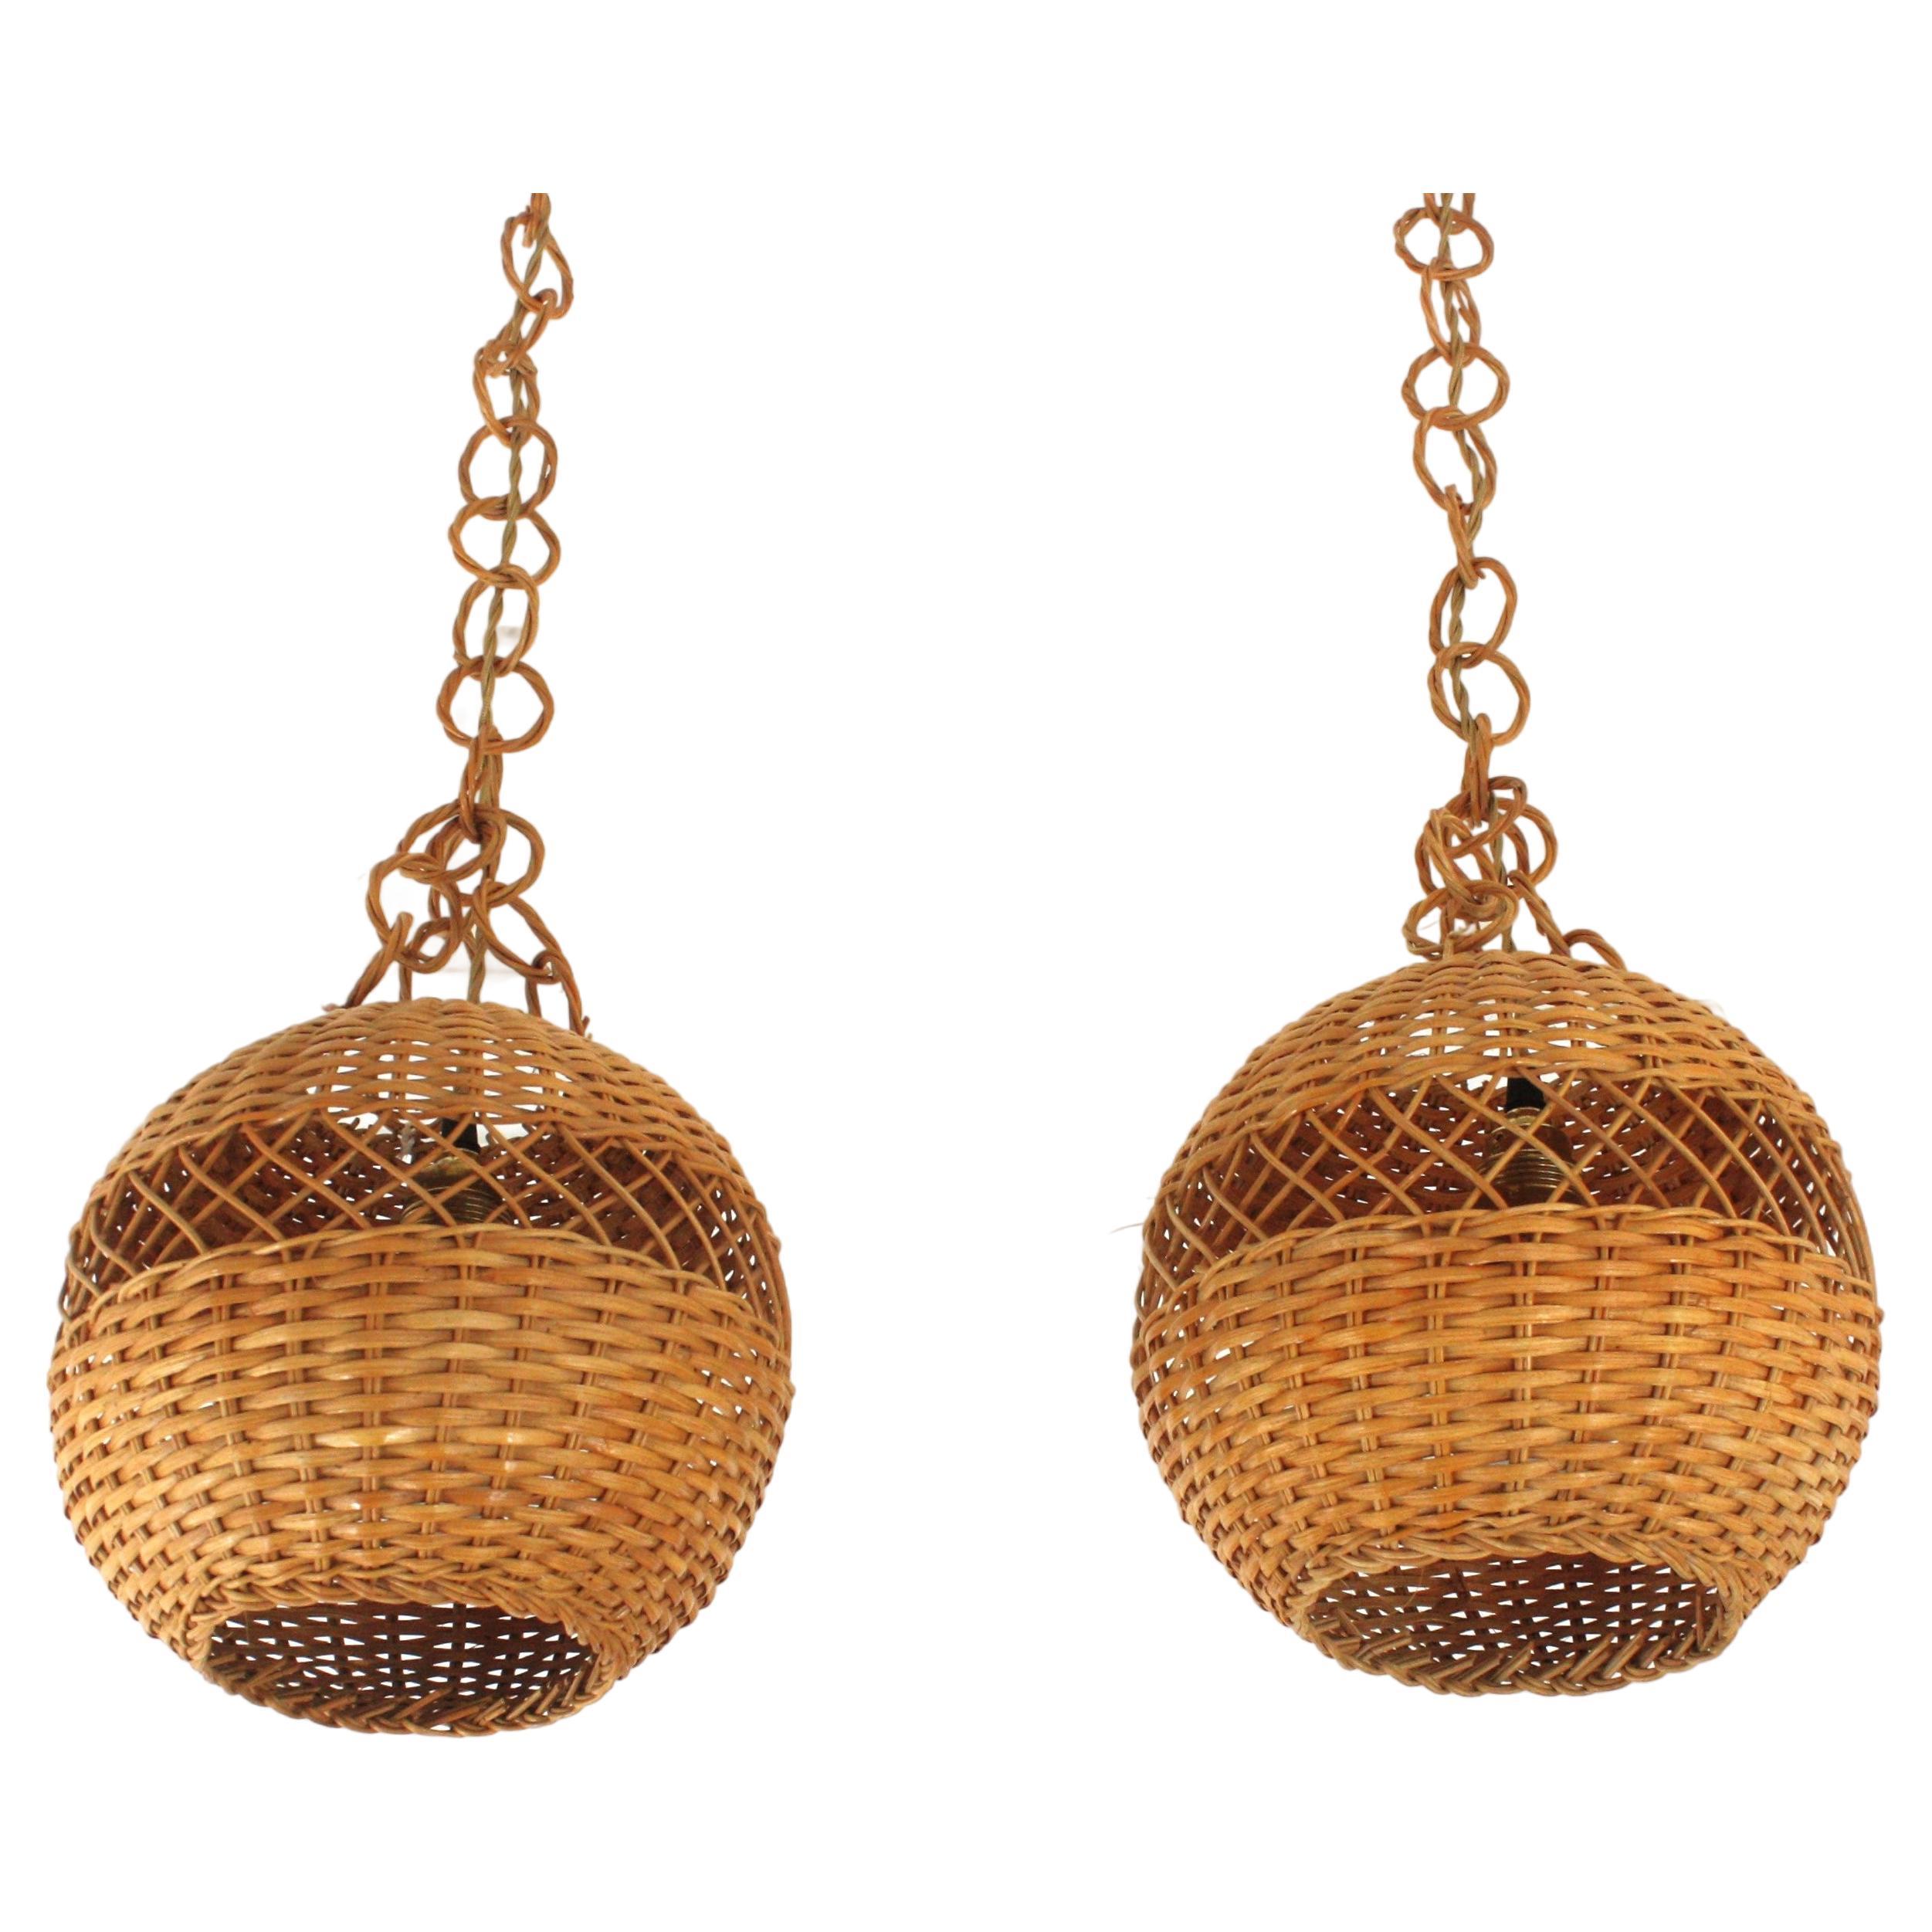 Ein Paar handgeflochtene Globe Pendelleuchten oder Laternen aus Weidengeflecht